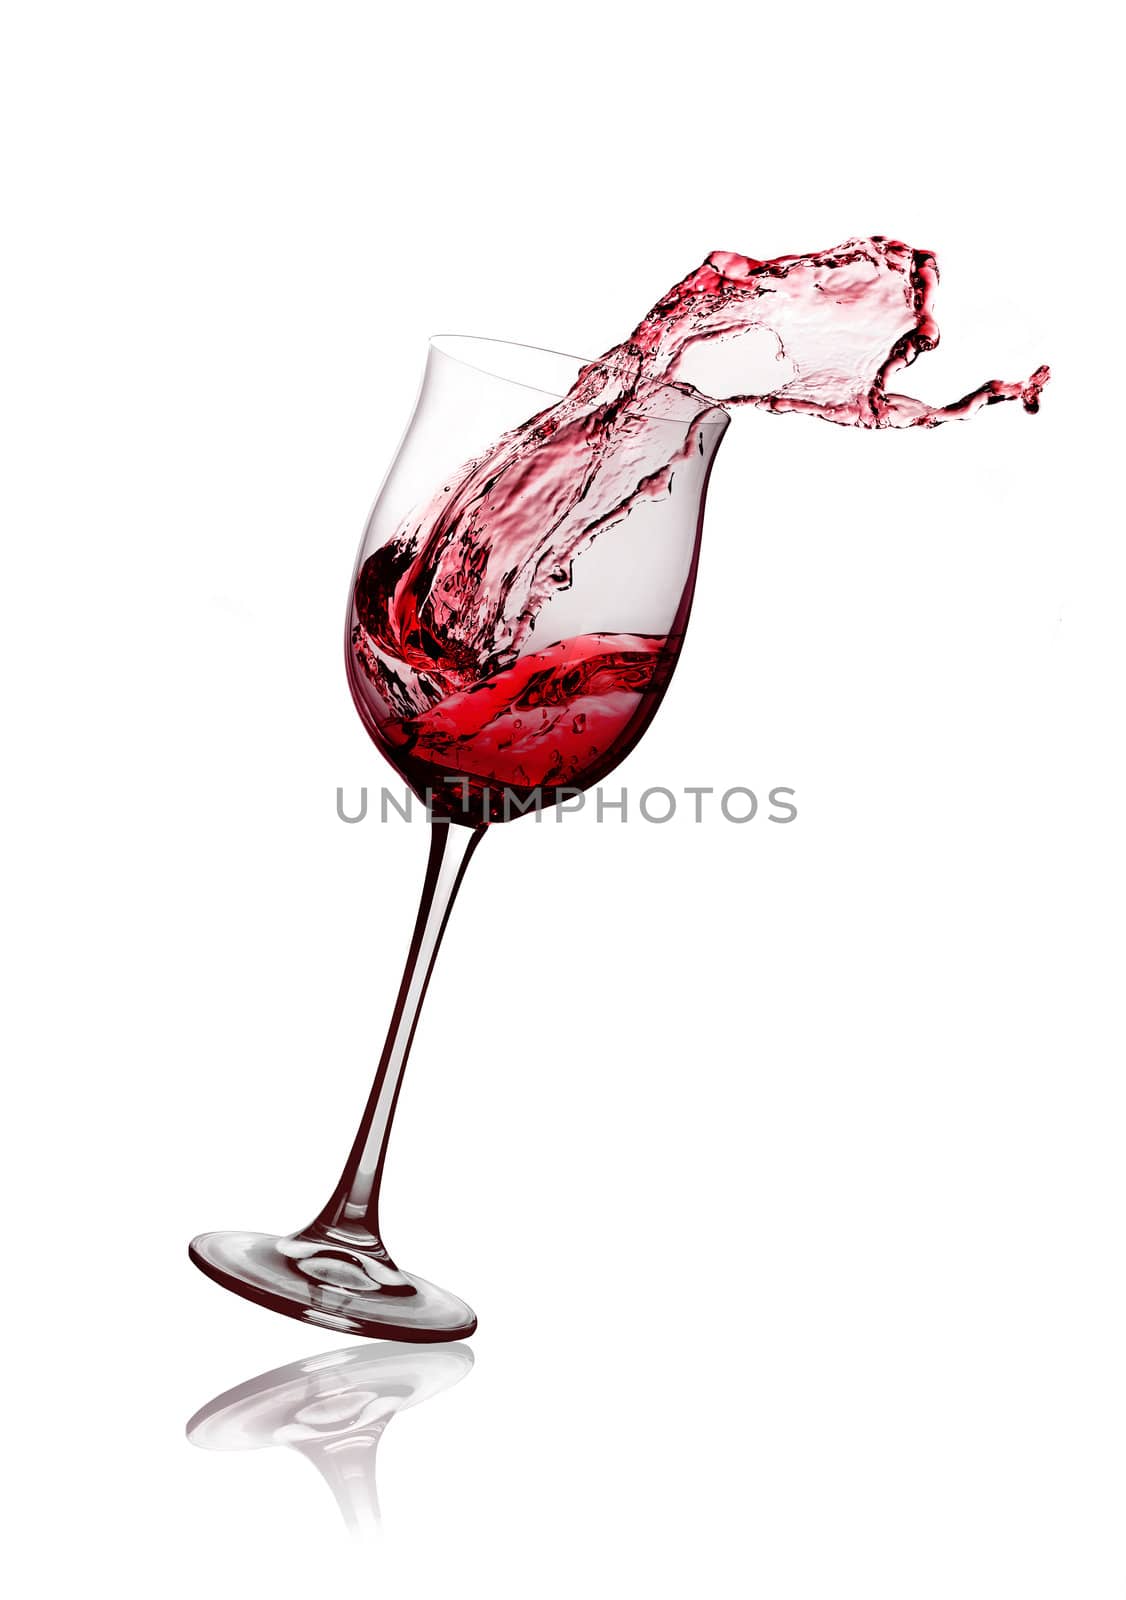 red wine glass by GekaSkr